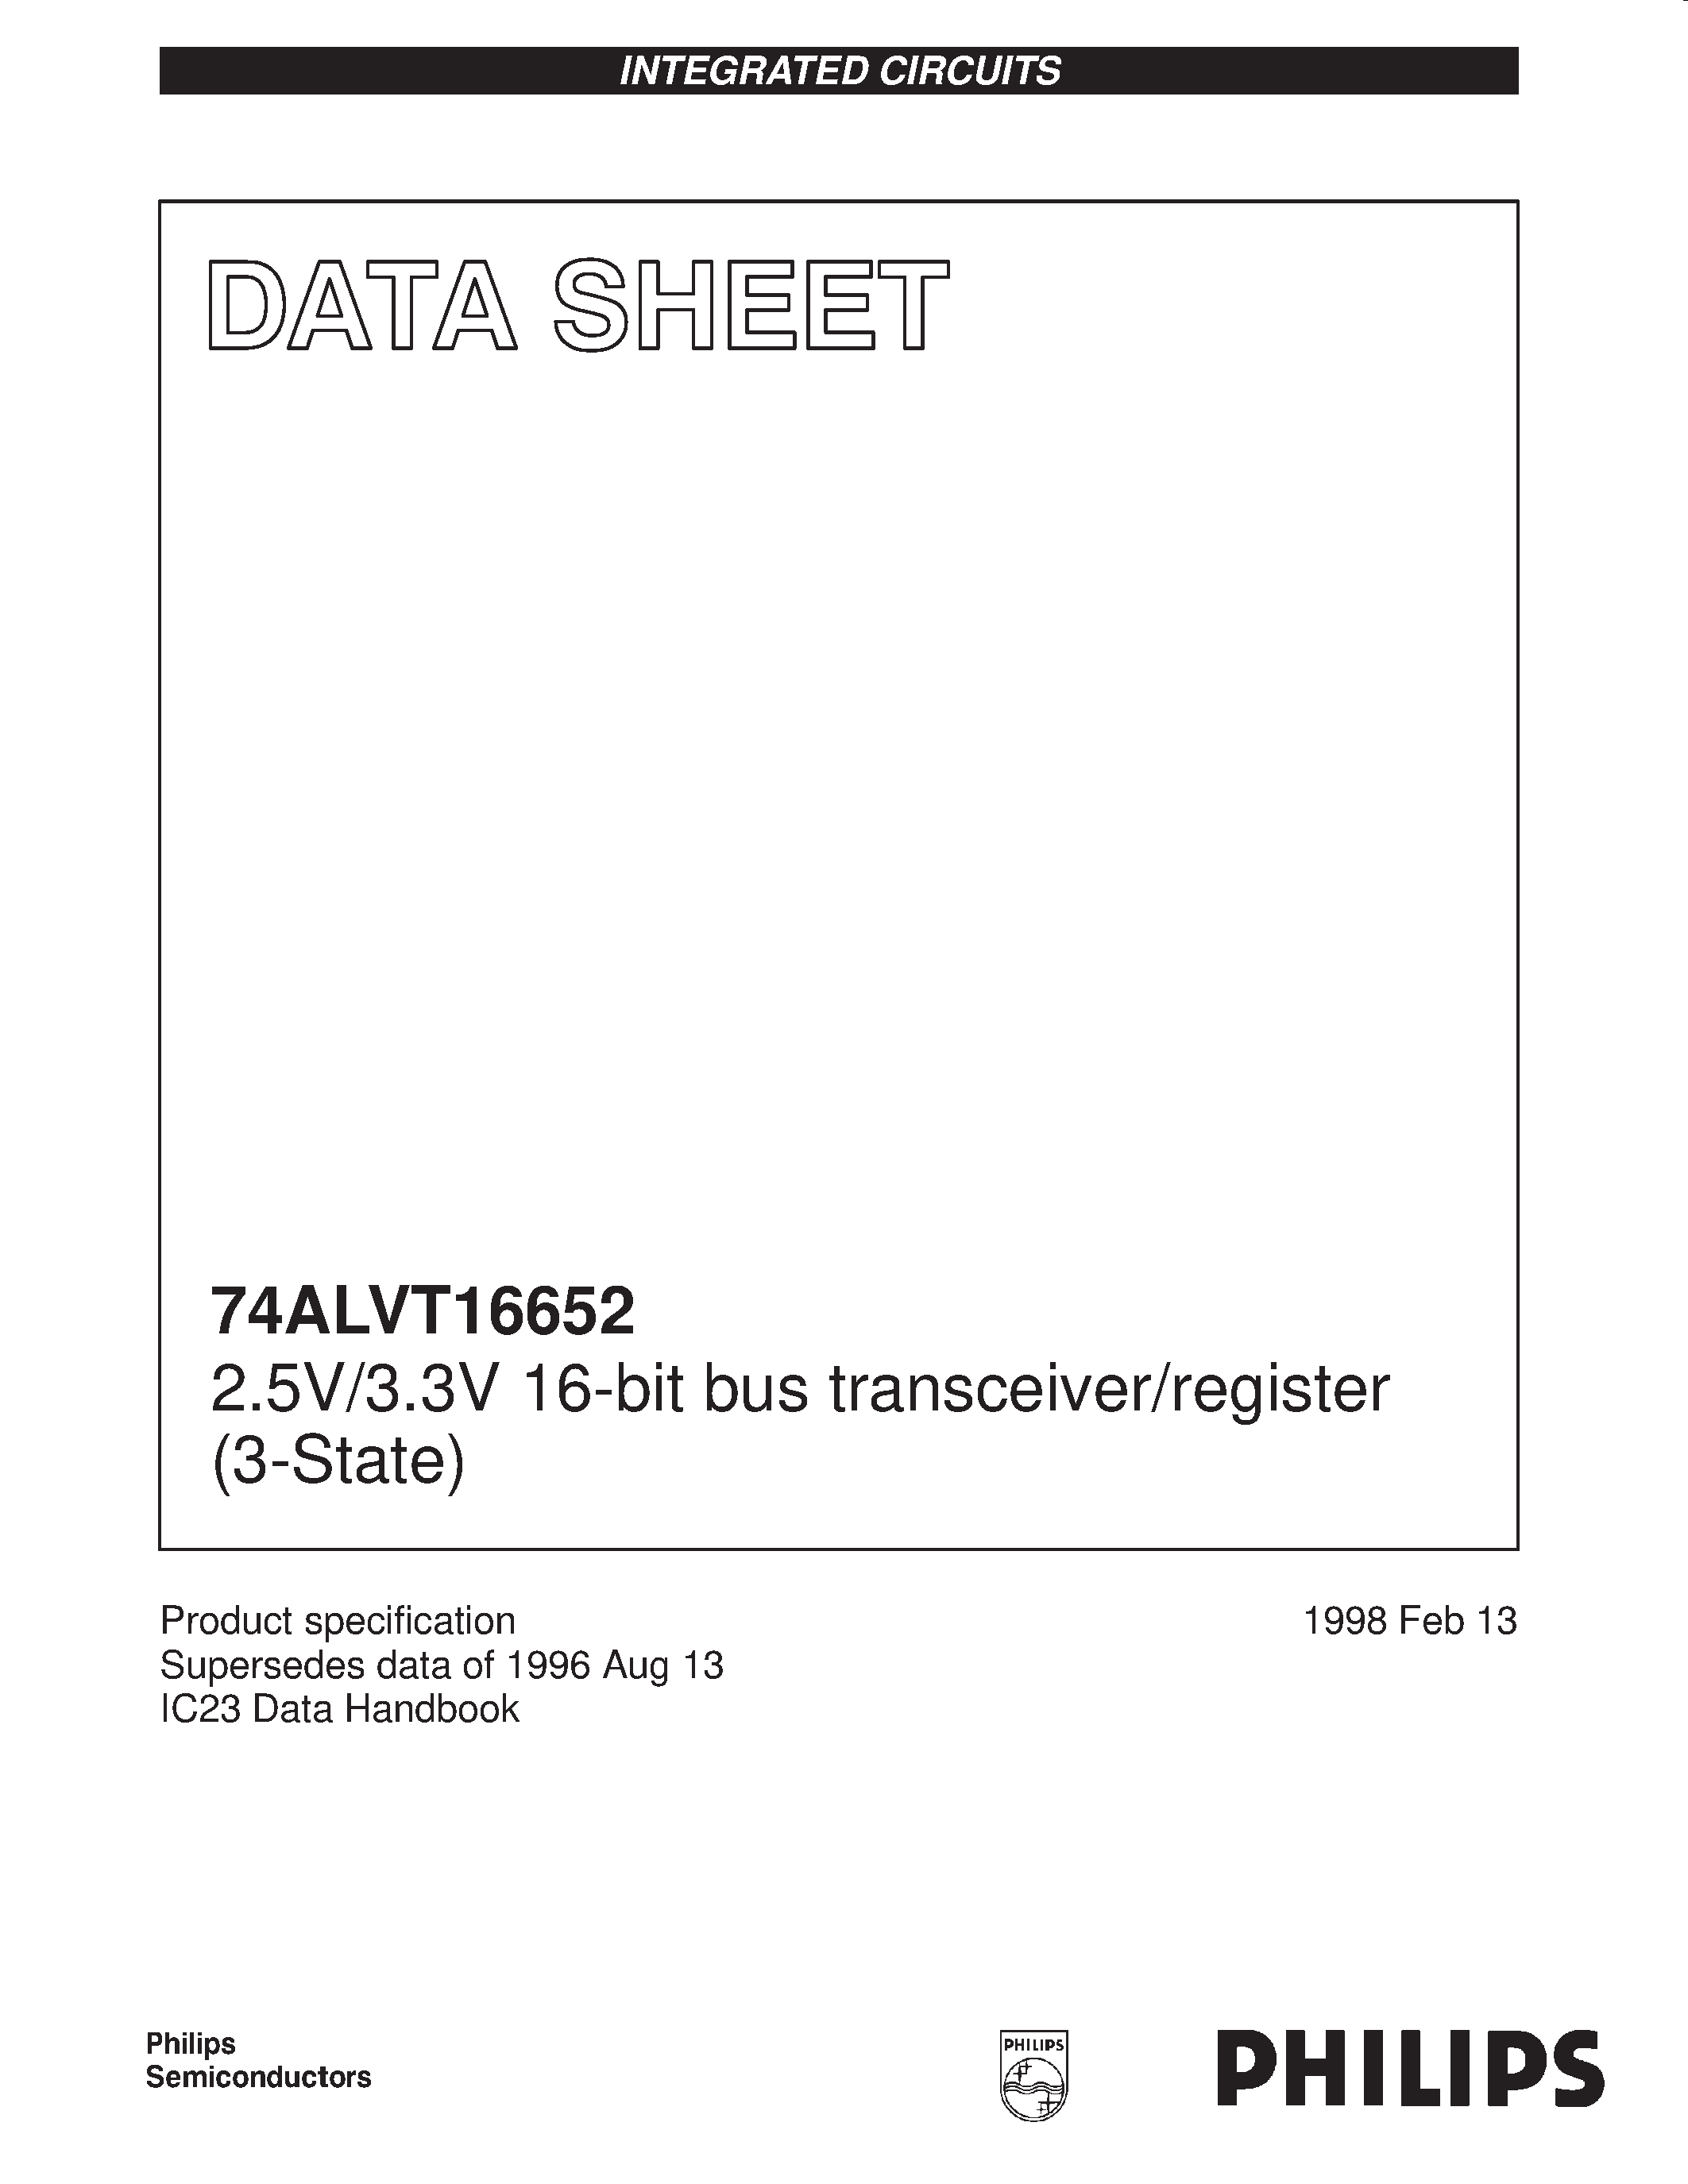 Datasheet 74ALVT16652 - 2.5V/3.3V 16-bit bus transceiver/register 3-State page 1